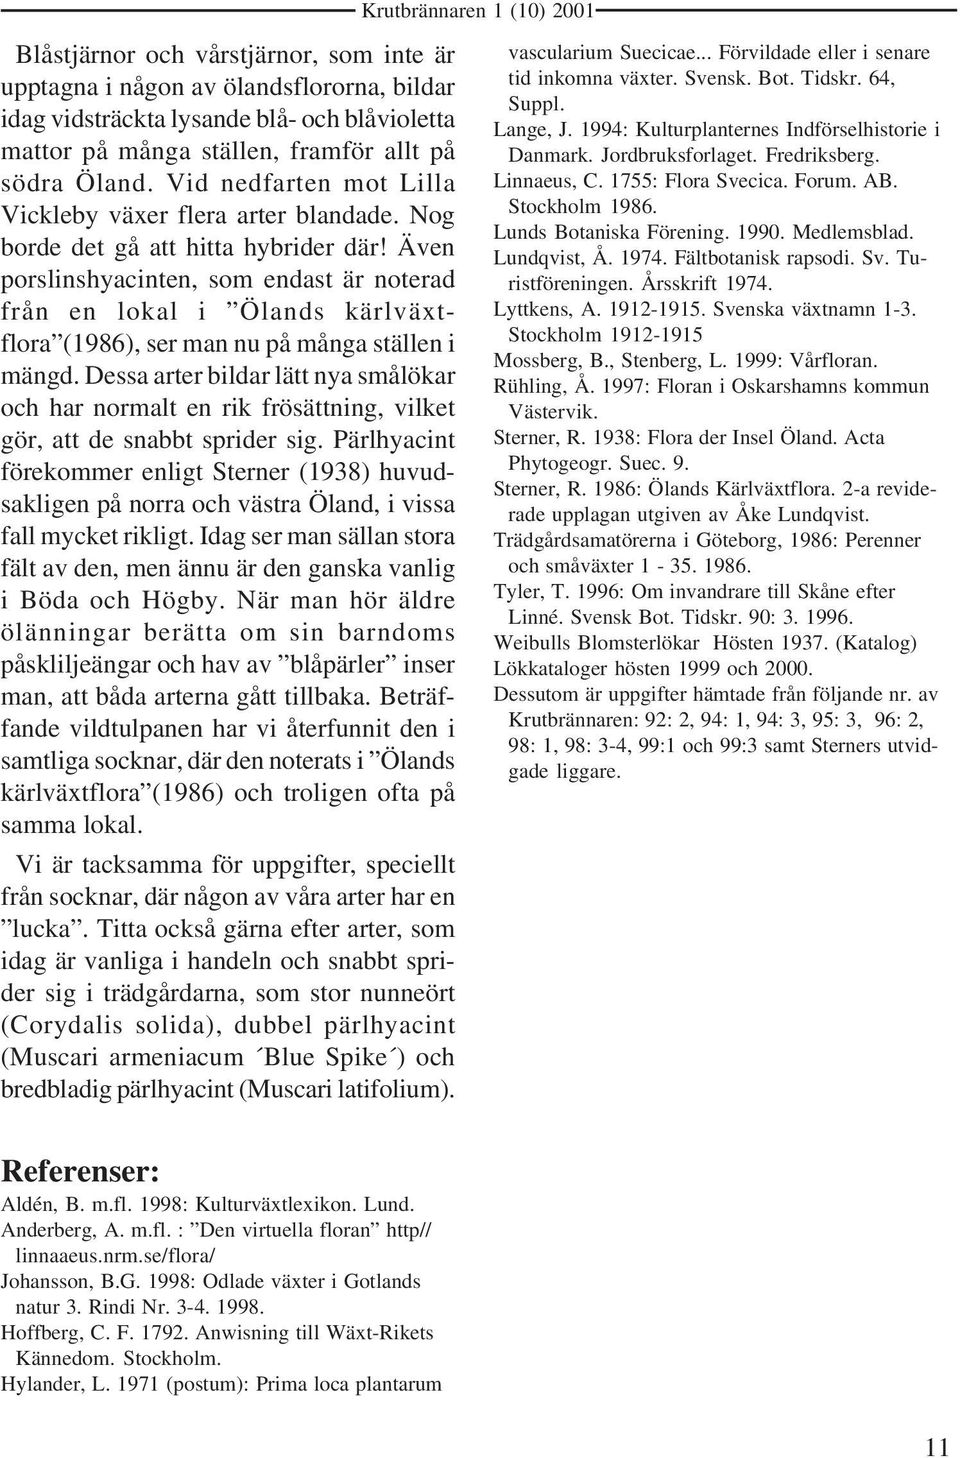 Även porslinshyacinten, som endast är noterad från en lokal i Ölands kärlväxtflora (1986), ser man nu på många ställen i mängd.